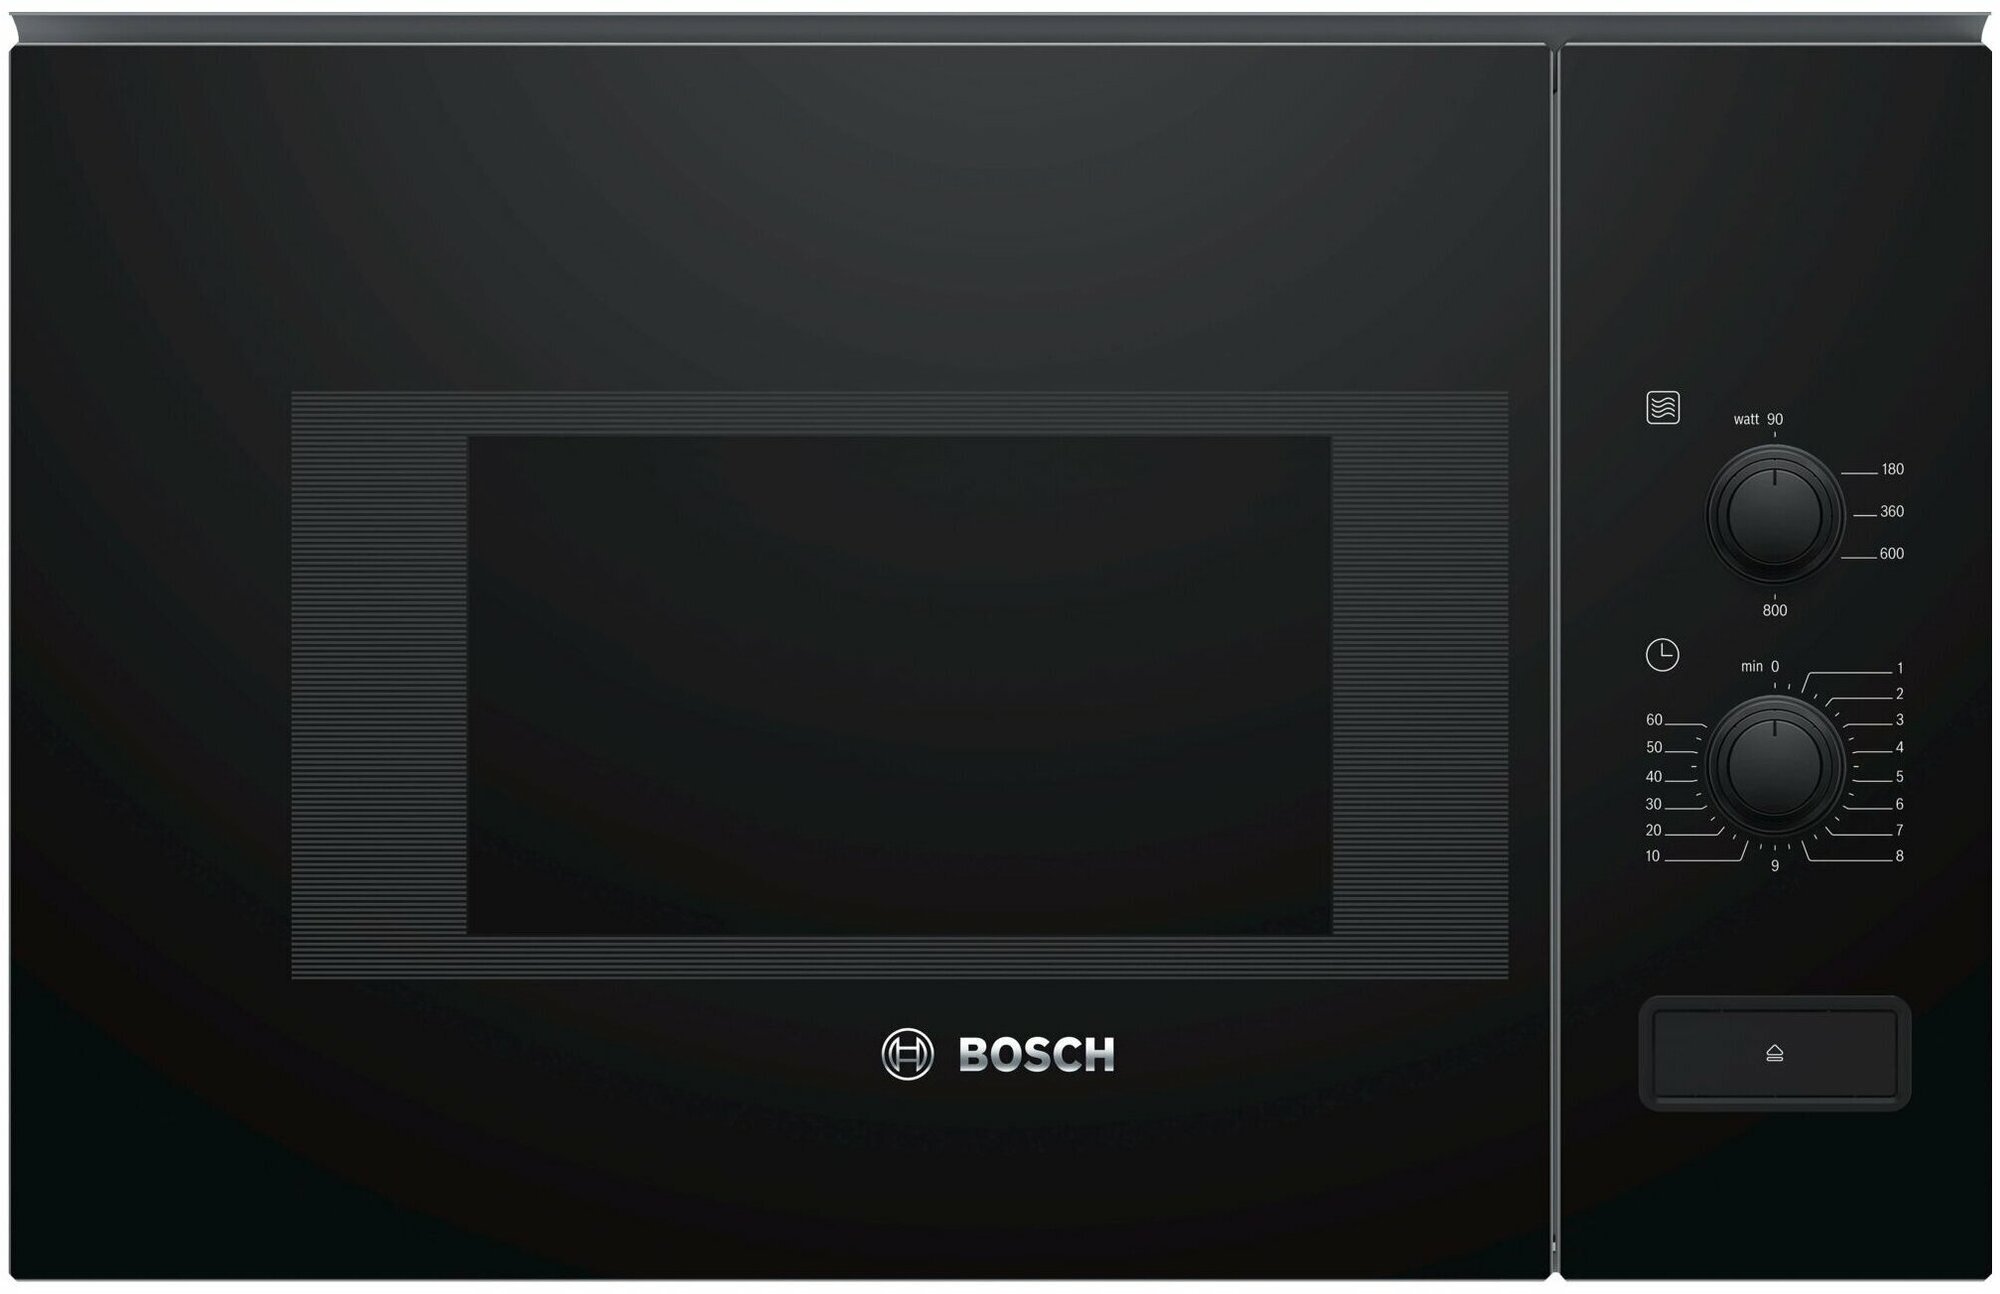 Микроволновая печь встраиваемая Bosch BFL520MB0